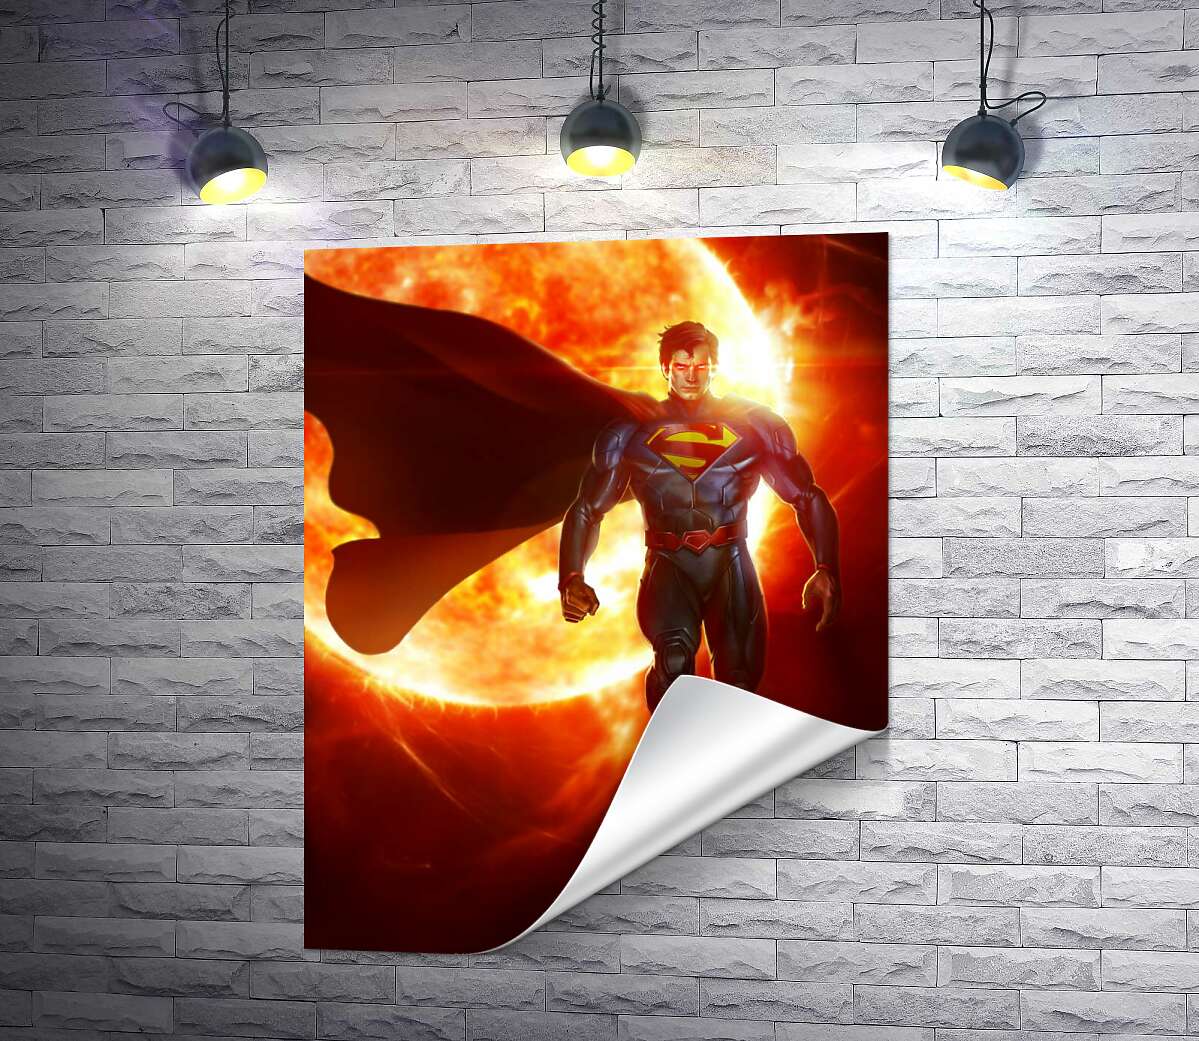 друк Супермен (Superman) на фоні розжареної сонячної кулі